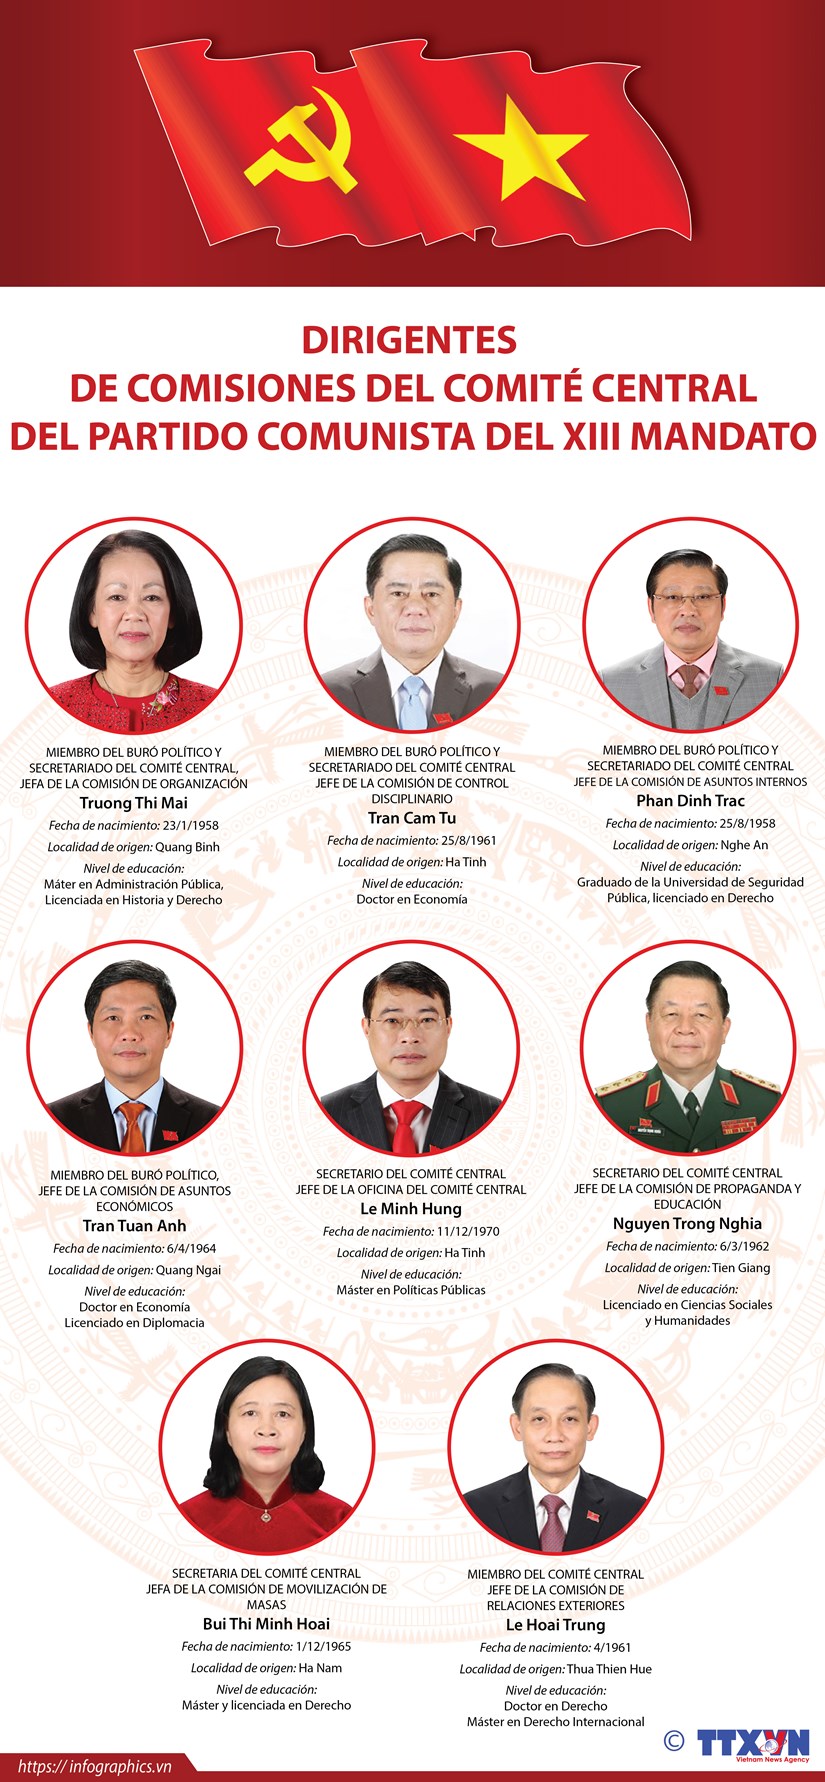 Los dirigentes de las comisiones del Comite Central del Partido Comunista de Vietnam hinh anh 1